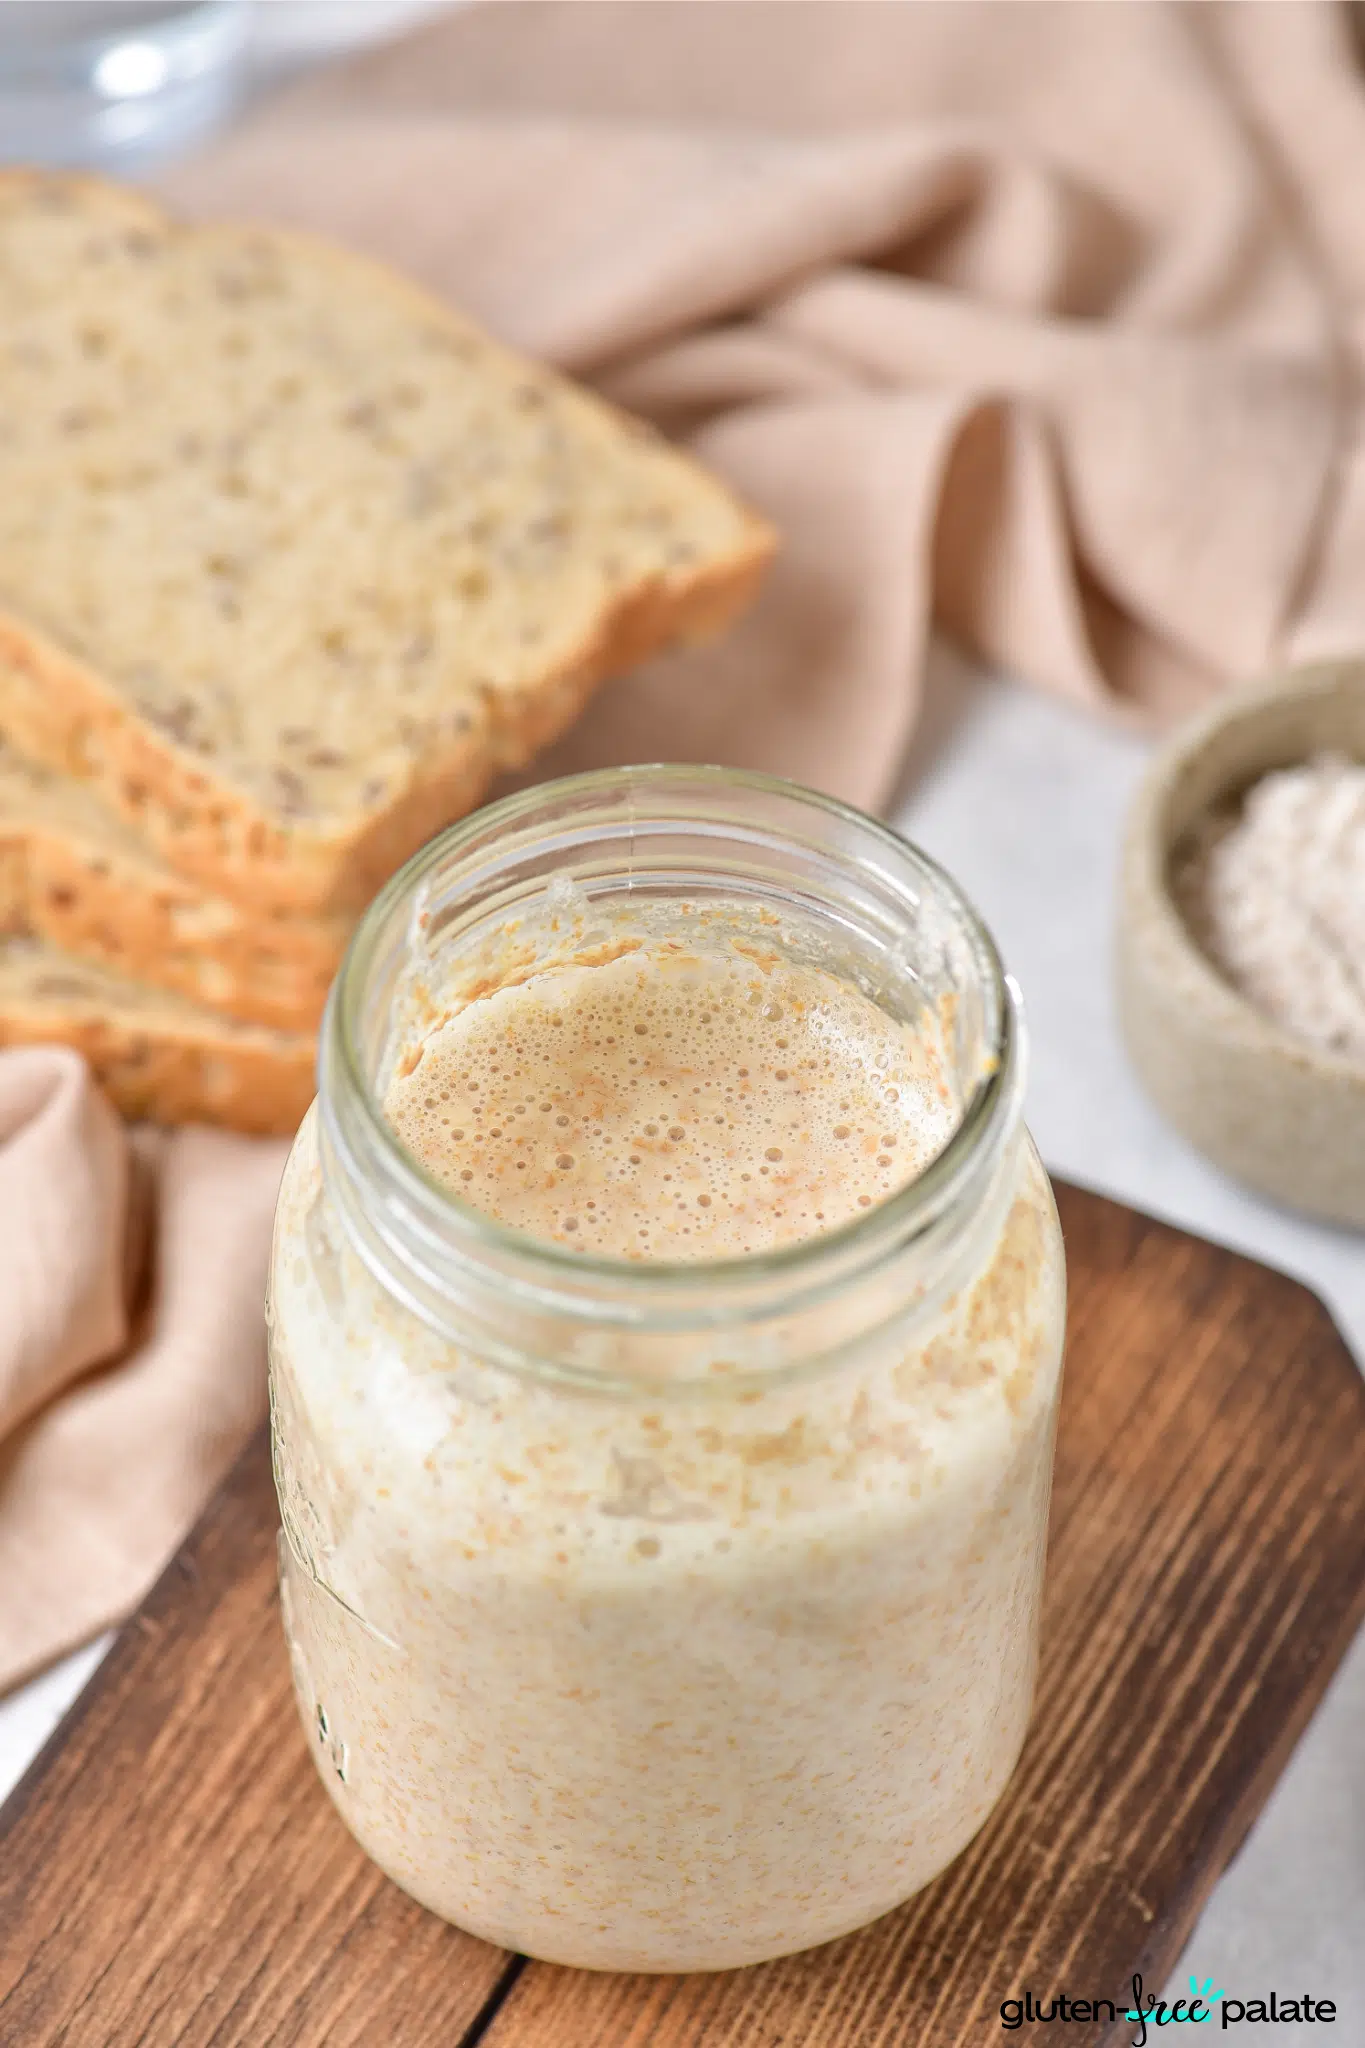 gluten-free sourdough starter in a jar.